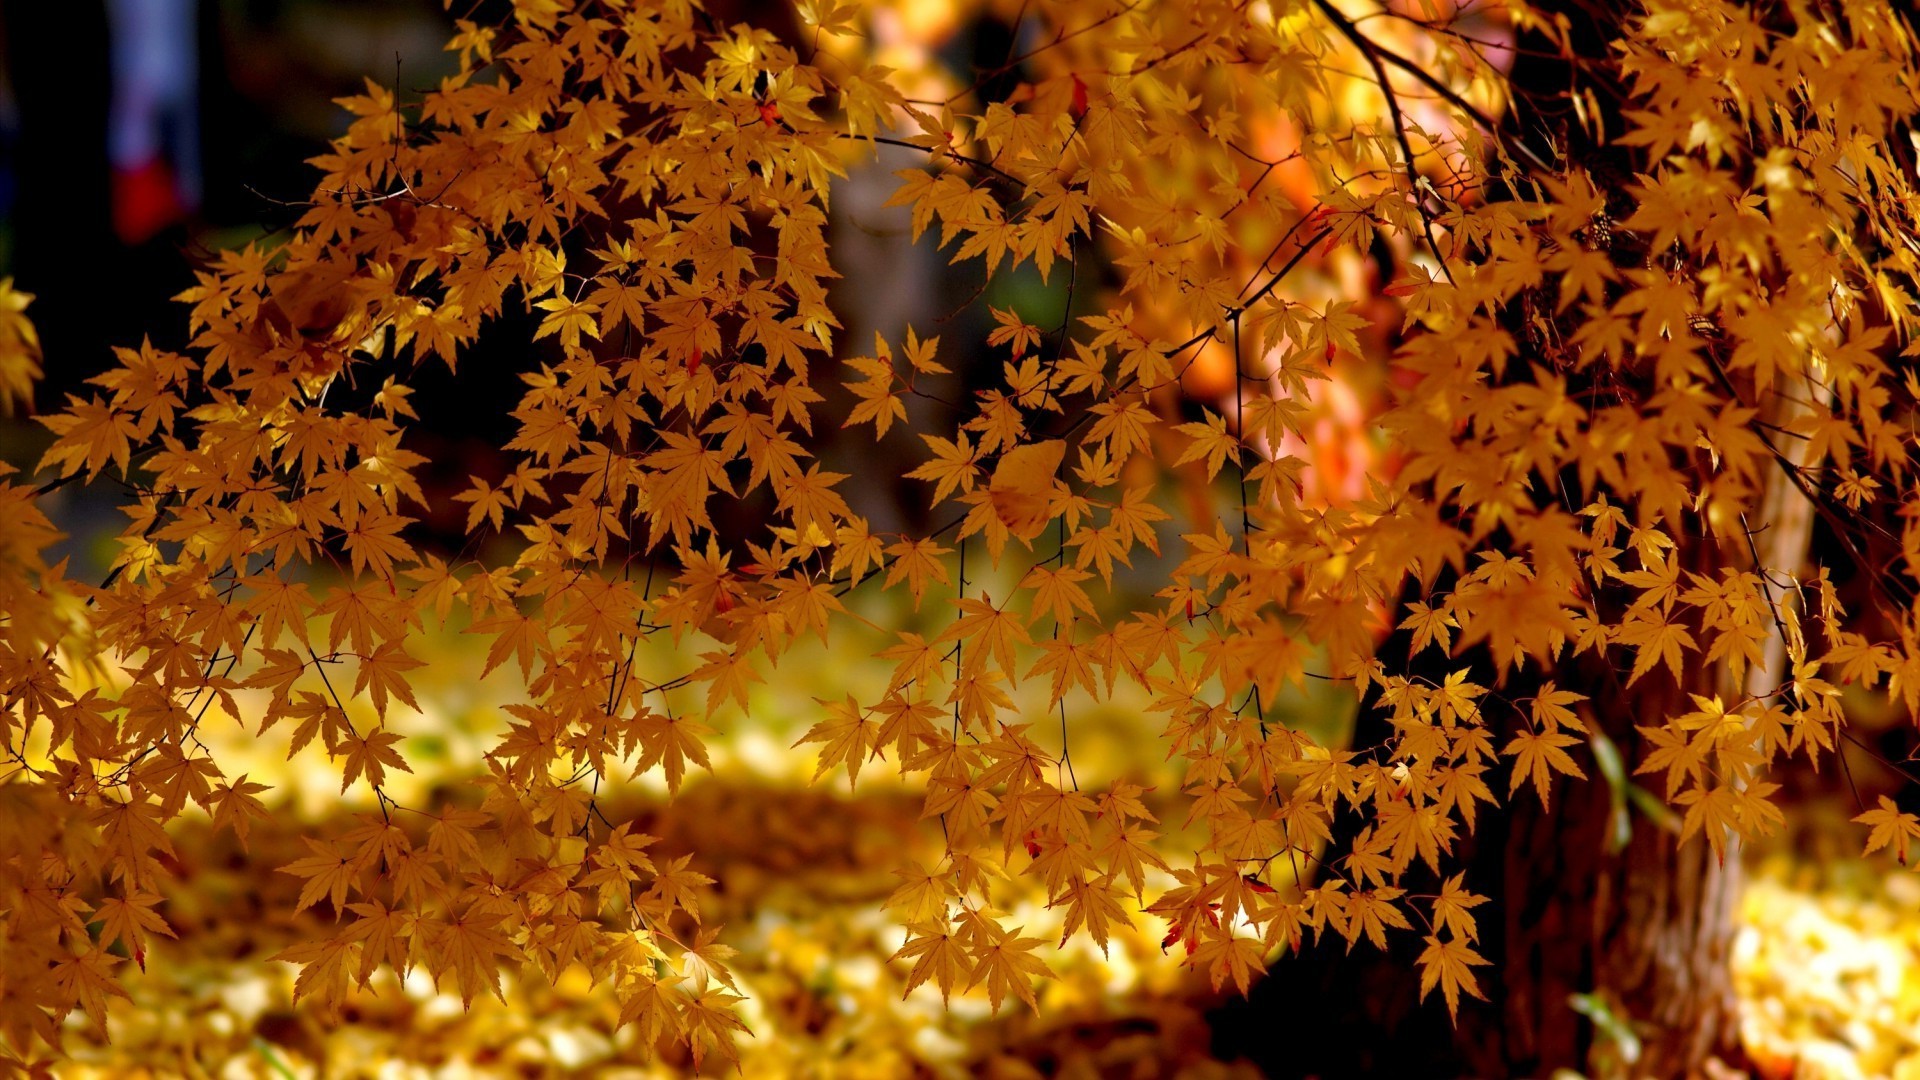 осень осень лист сезон природа кленовый яркий древесины флора на открытом воздухе дерево золото парк цвет хорошую погоду